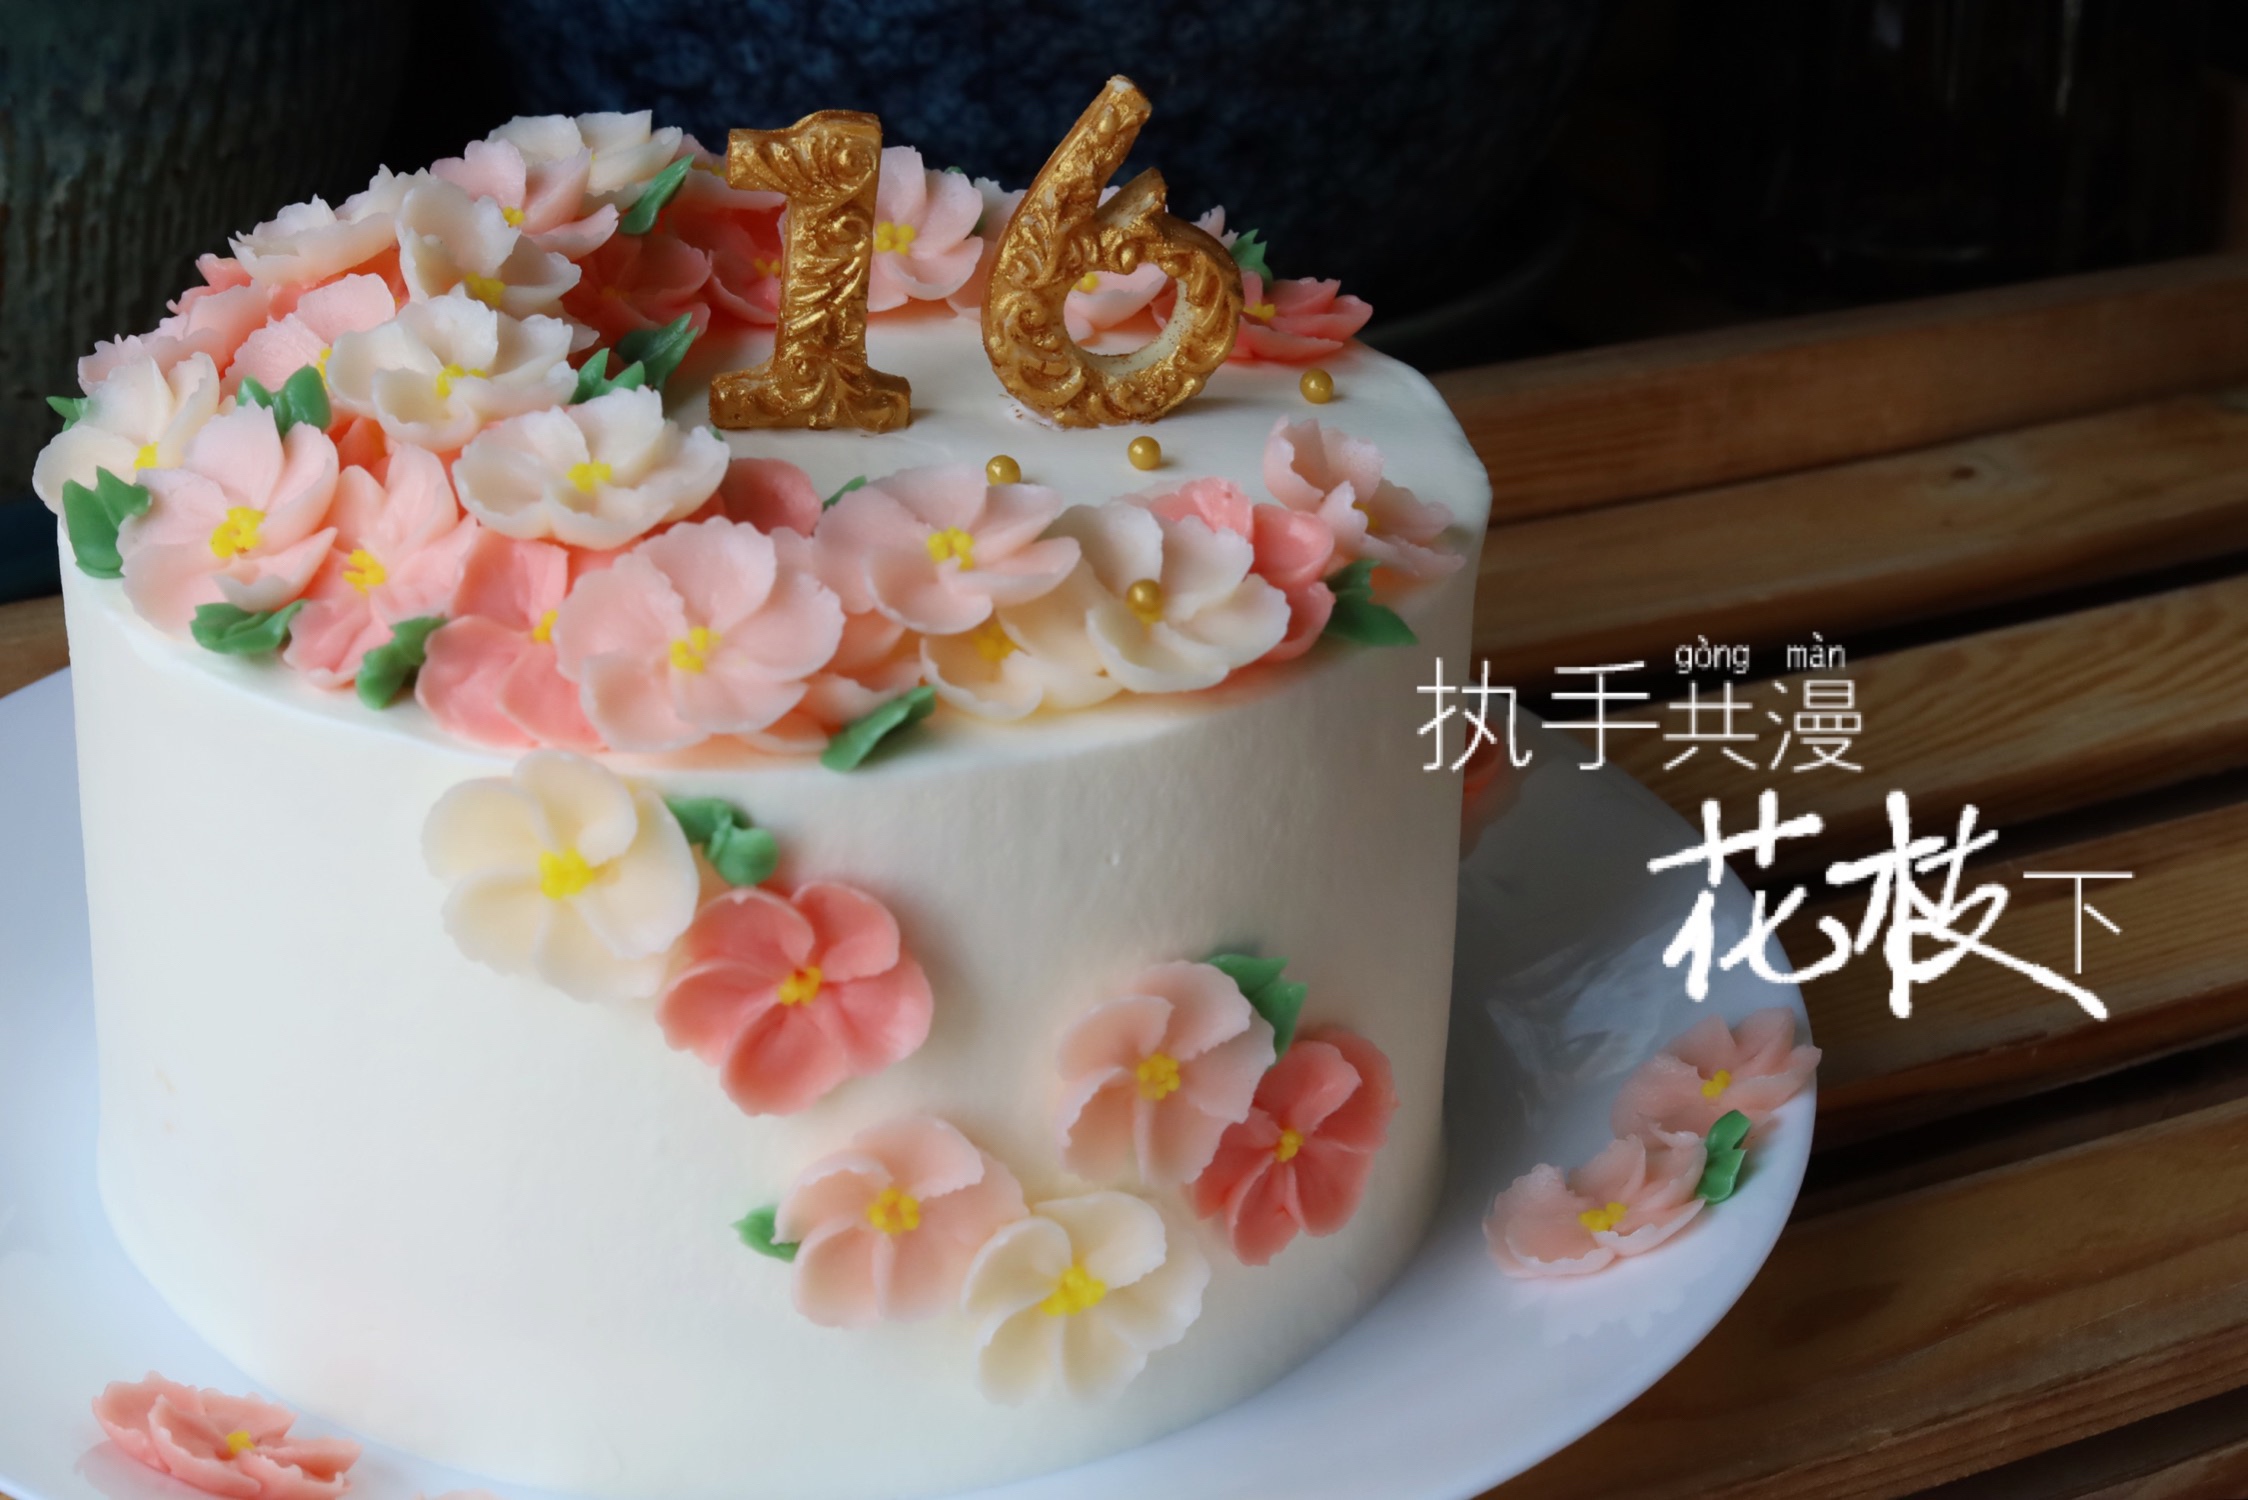 携手共漫花枝下 结婚纪念日蛋糕 五瓣花 的做法步骤图 淡月风舞 下厨房